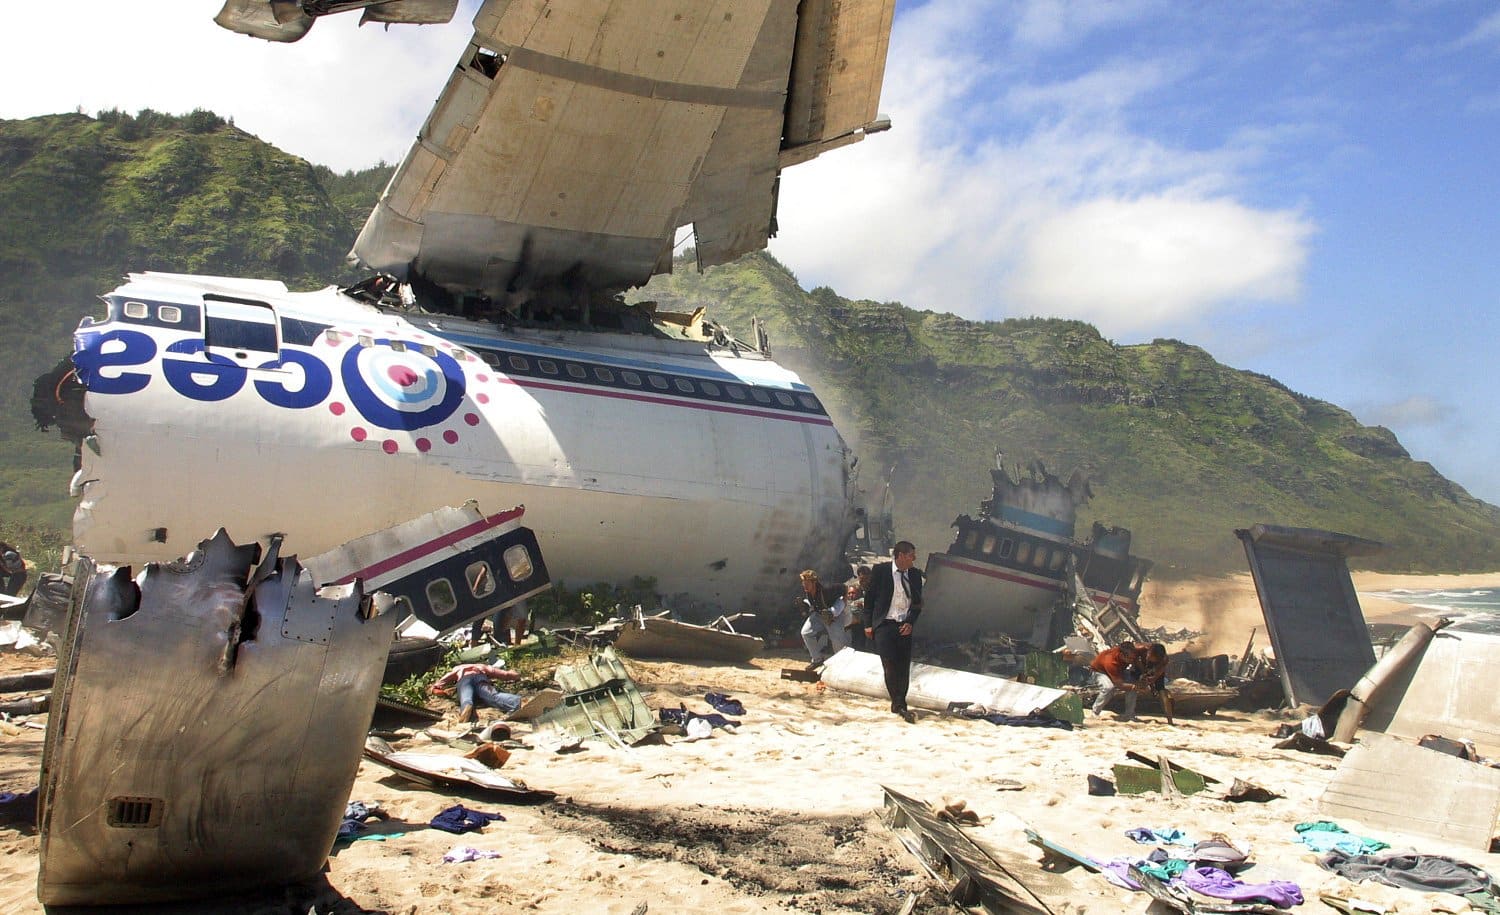 ¿Cuáles son las probabilidades de sobrevivir a un accidente de avión?